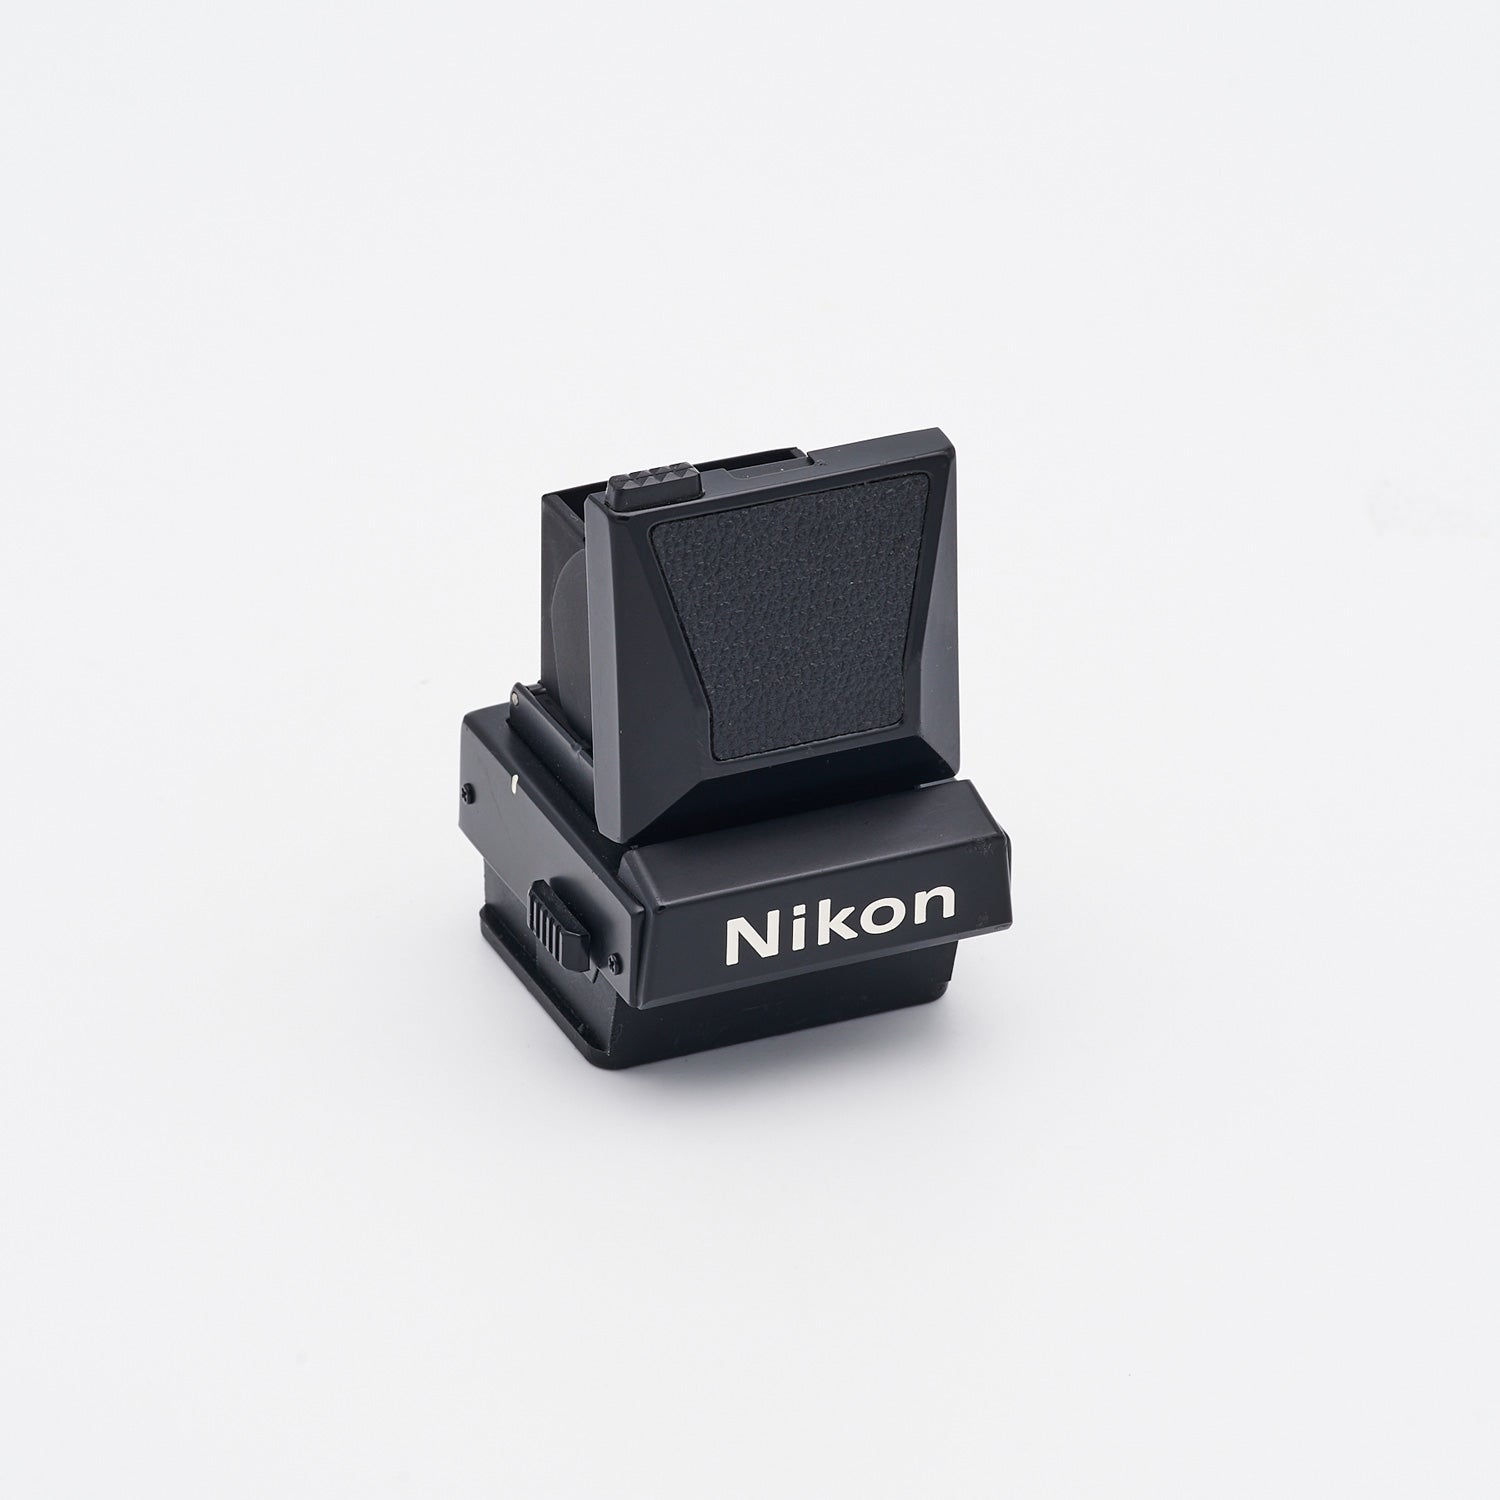 Nikon DW-3 Lichtschachtsucher (int. S/N 0022)